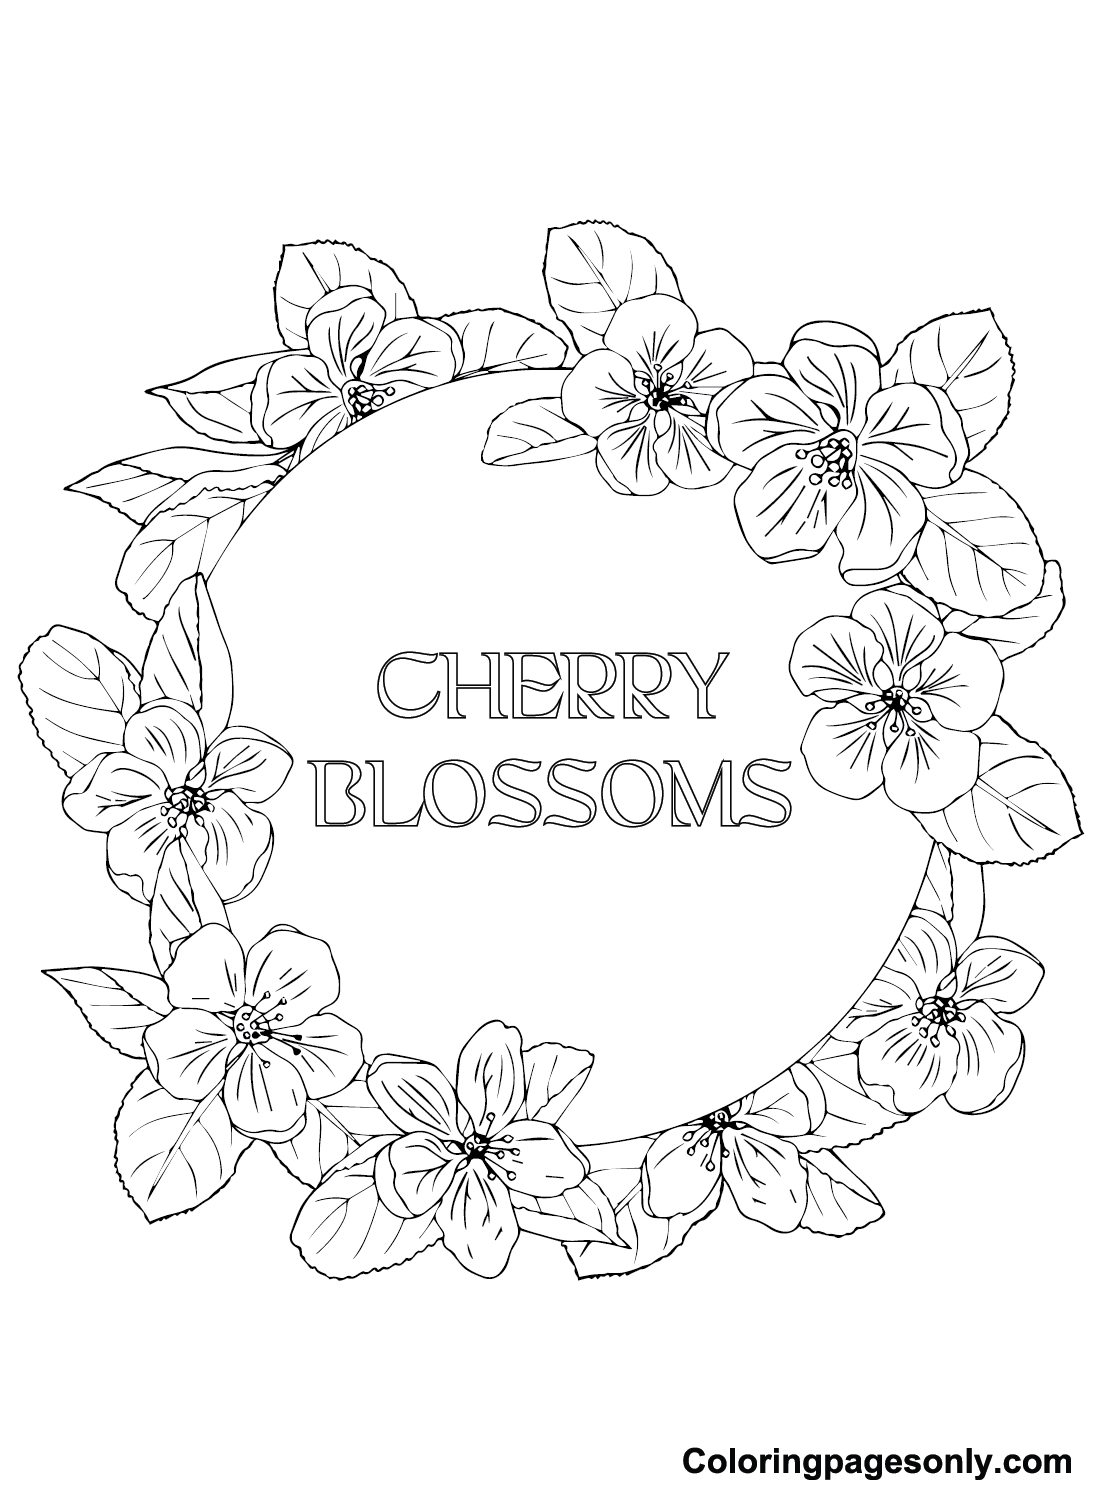 Dibujo de flores de cerezo de Cherry Blossom